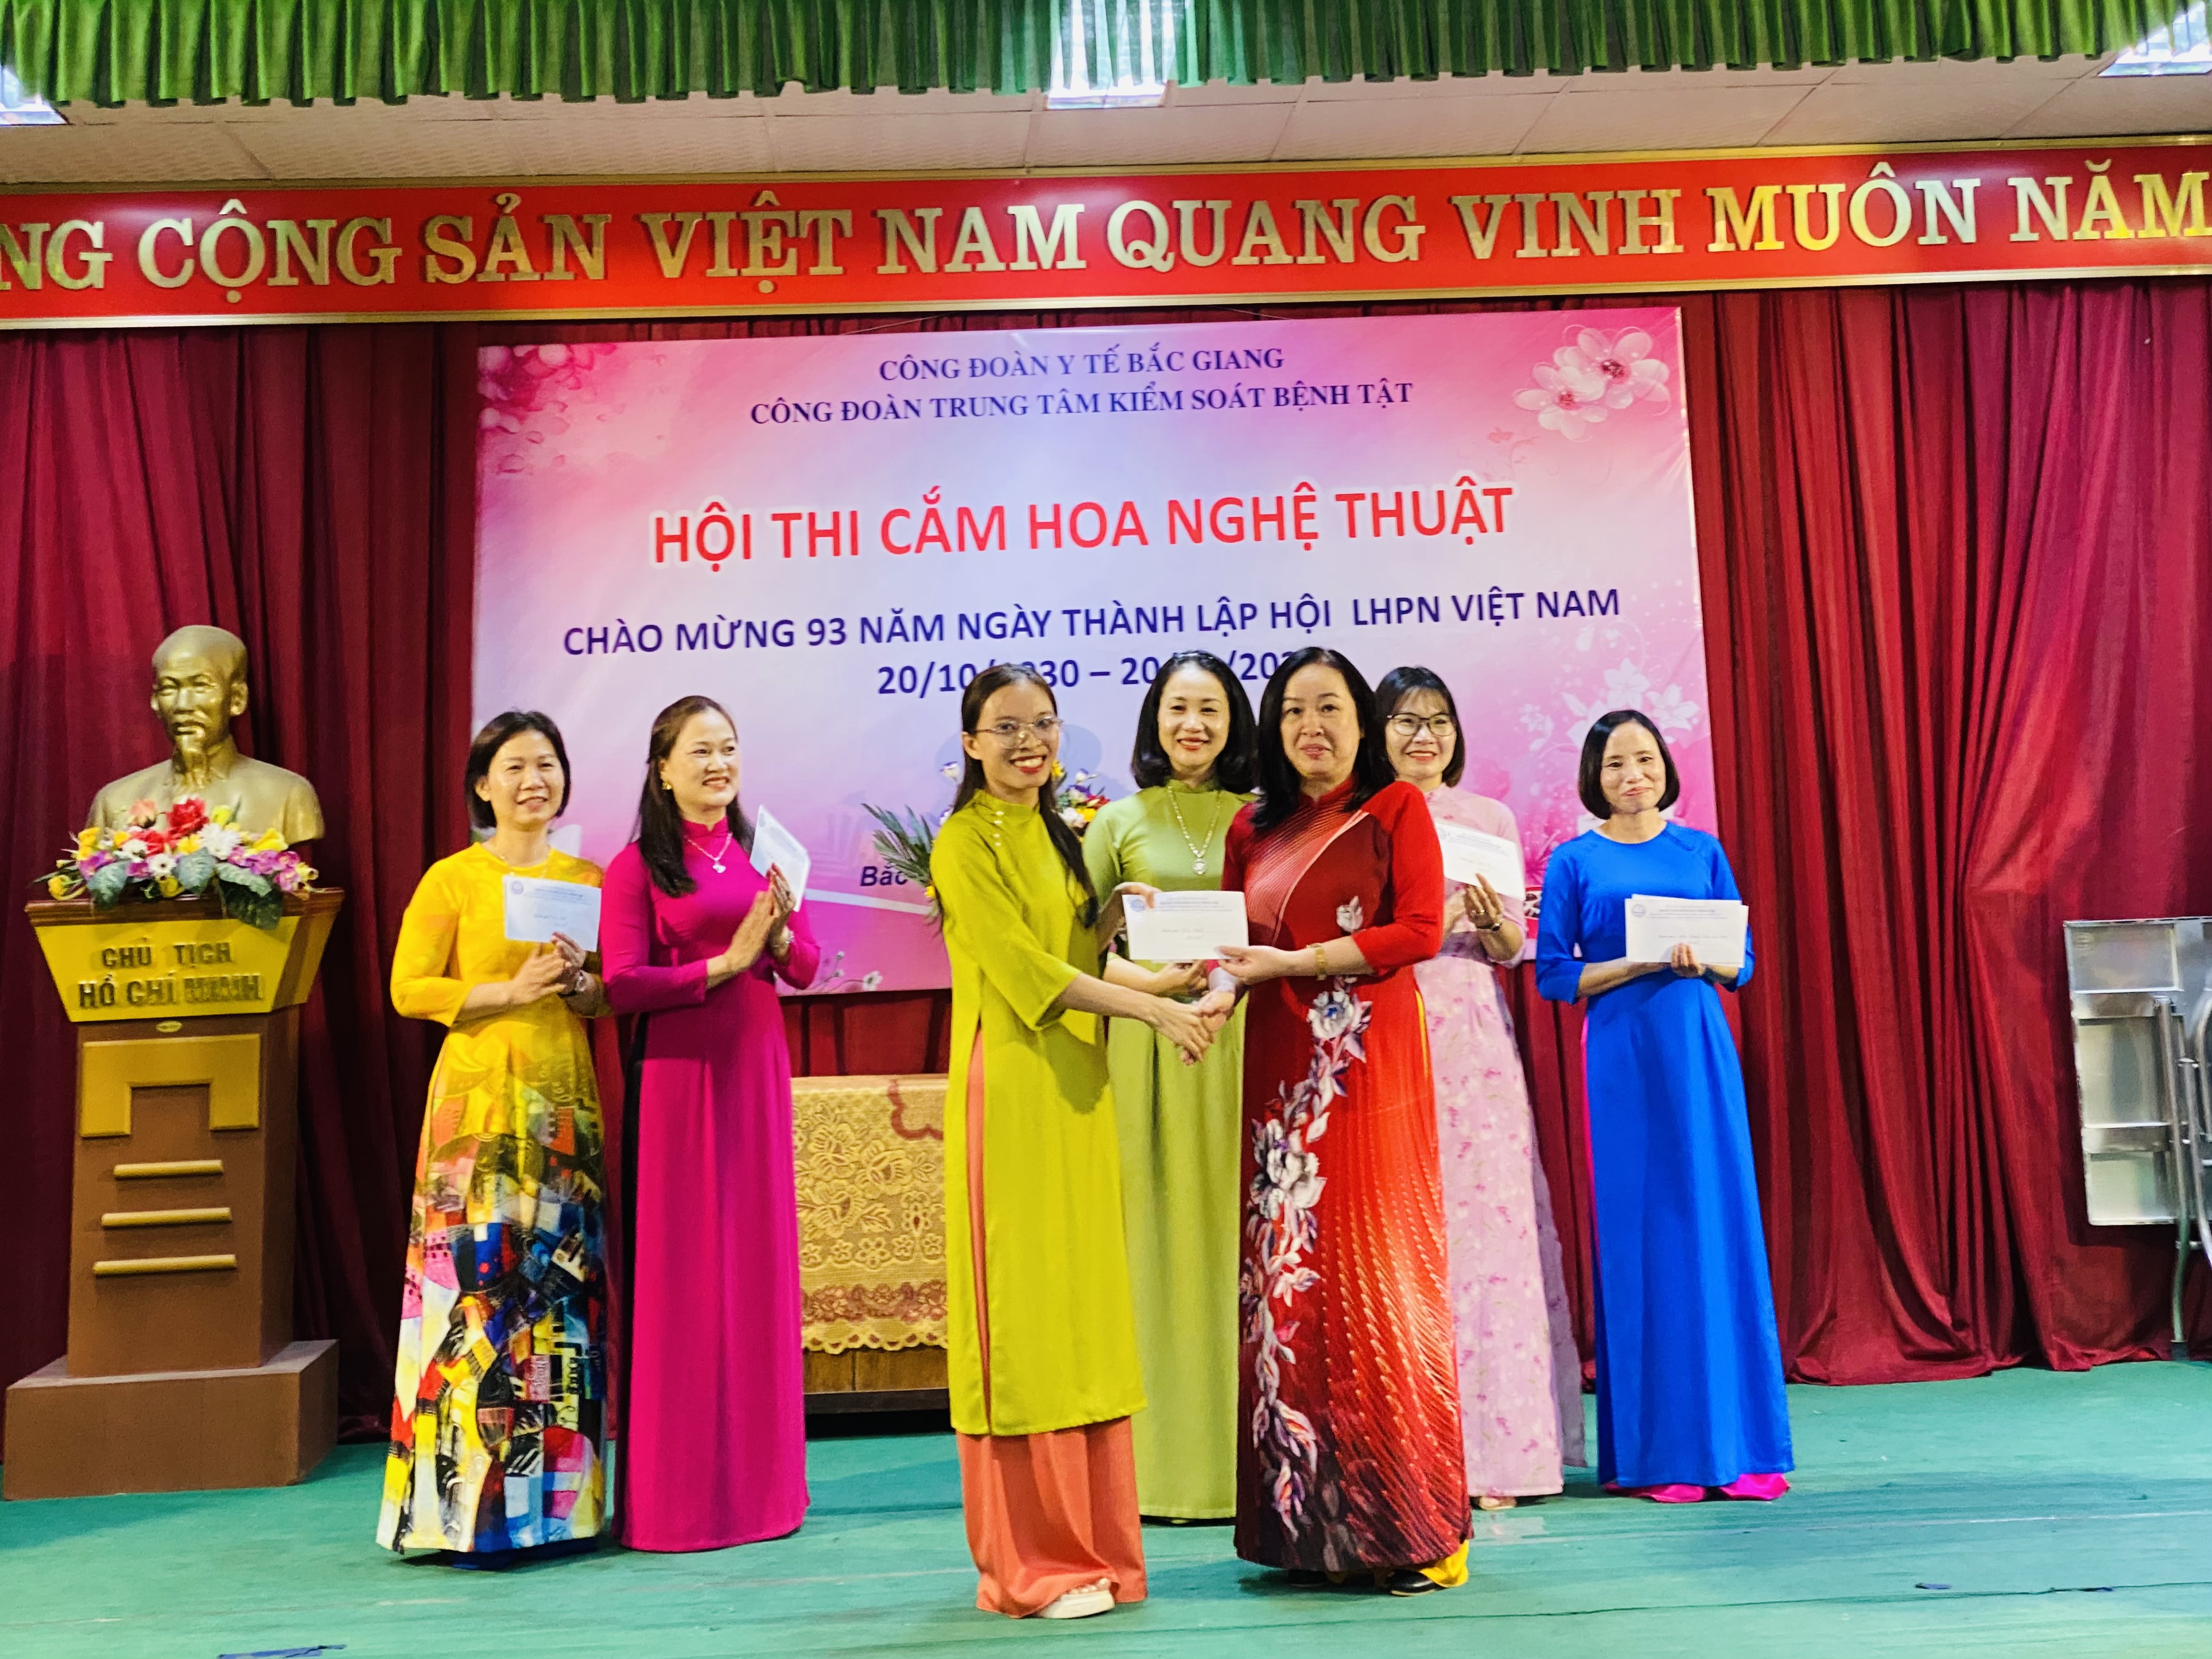 Hội thi cắm hoa chào mừng ngày thành lập Hội Liên hiệp phụ nữ Việt Nam 20 -10